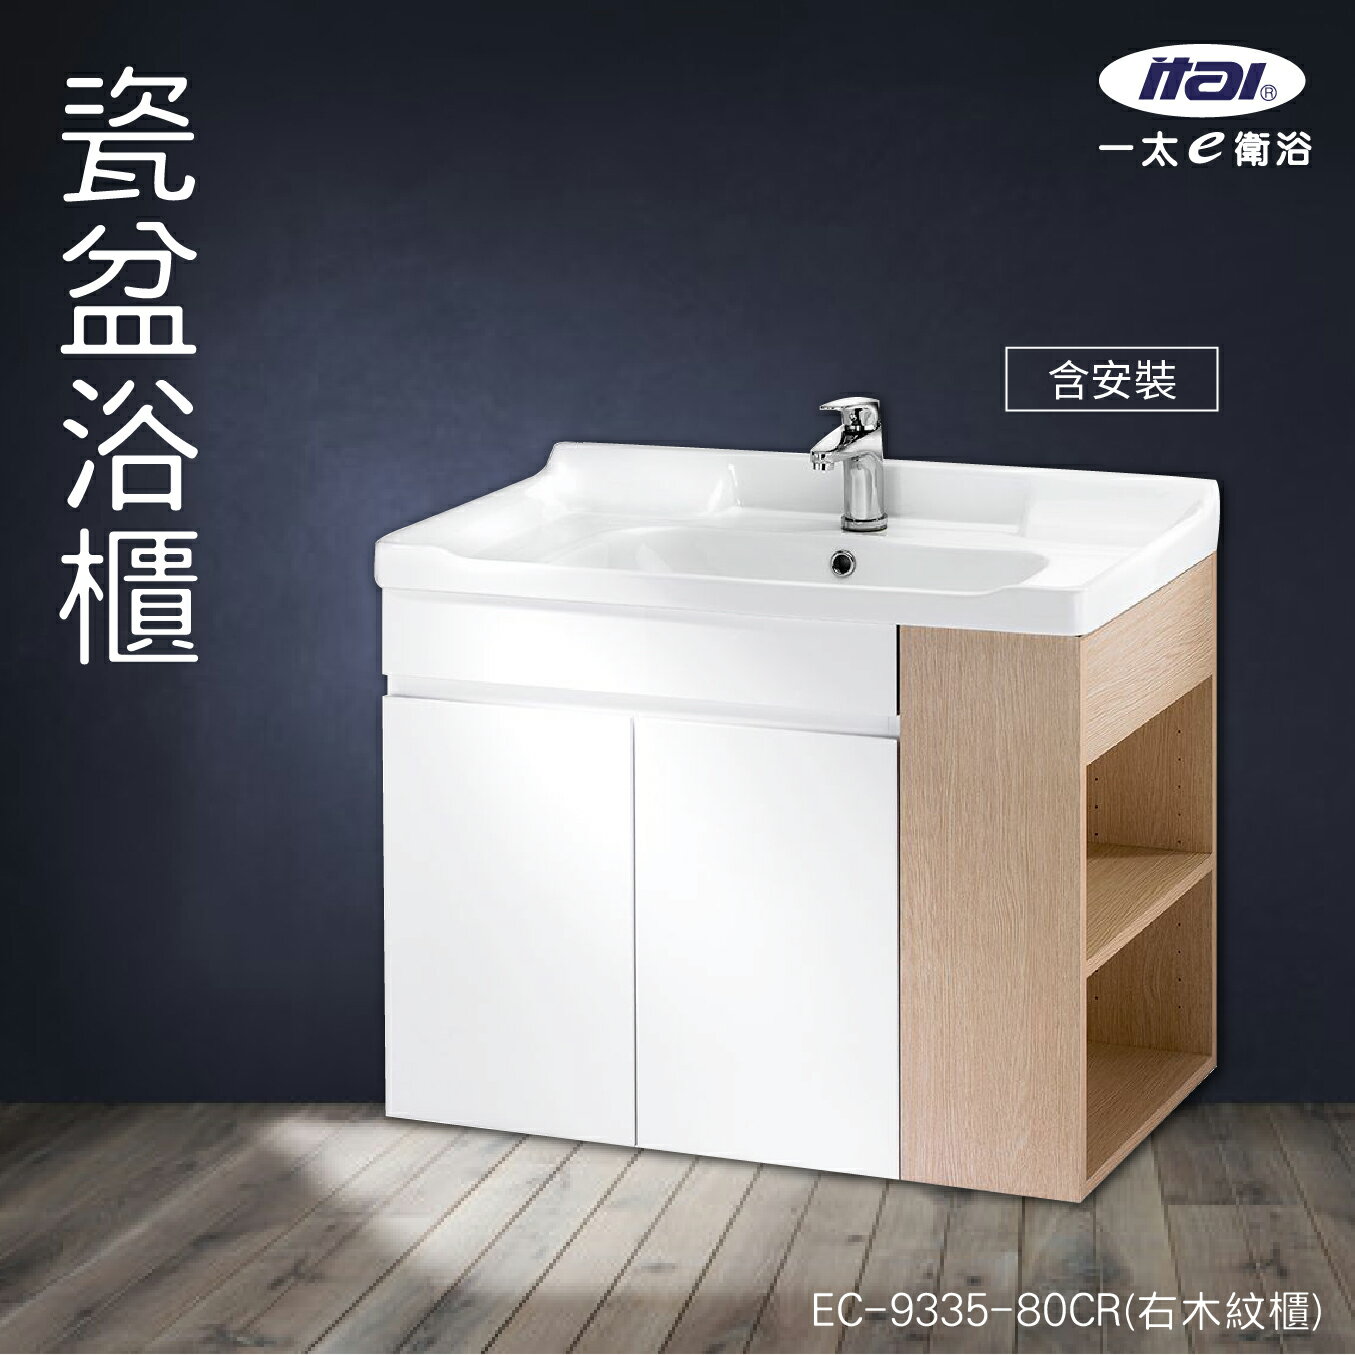 (含安裝)台灣製造 ITAI 瓷盆浴櫃 EC-9335-80CR(右木紋櫃) 浴室洗手台 緩衝設計 櫃子 陶瓷抗汙 純白 洗臉盆 抗汙釉